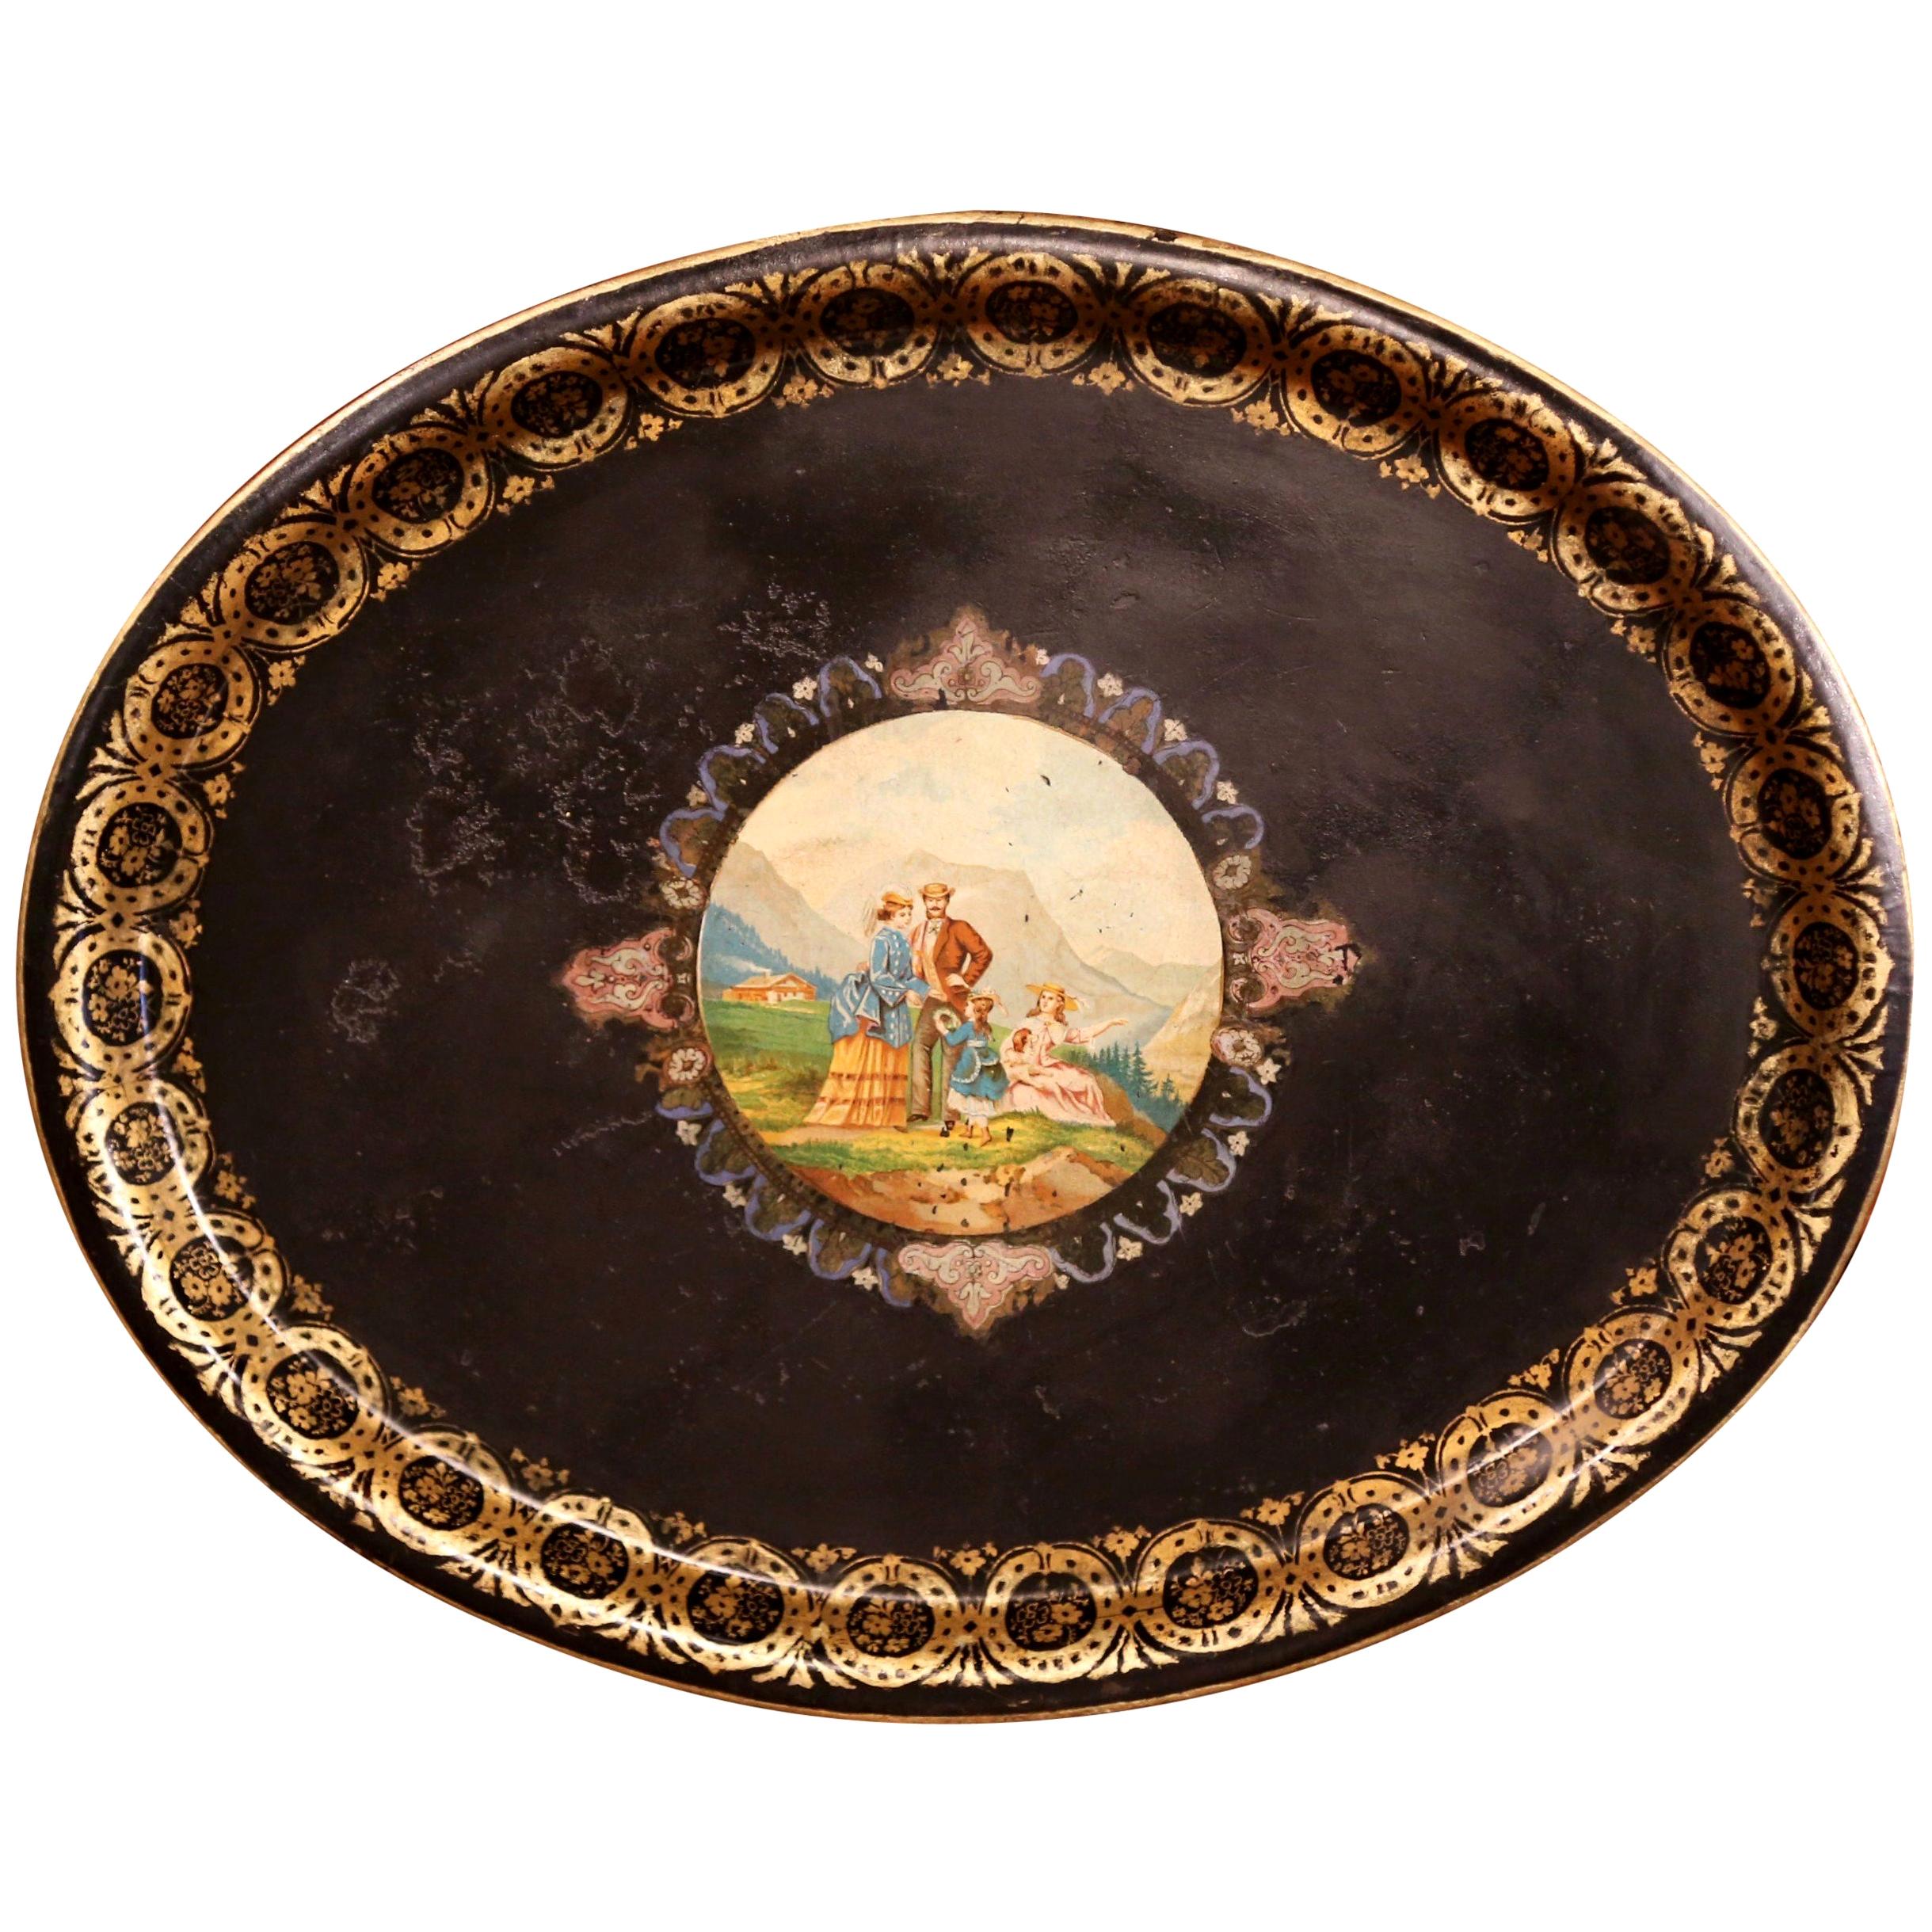 Plateau ovale à tôles peint à la main par Napoléon III au 19e siècle, avec scène de famille